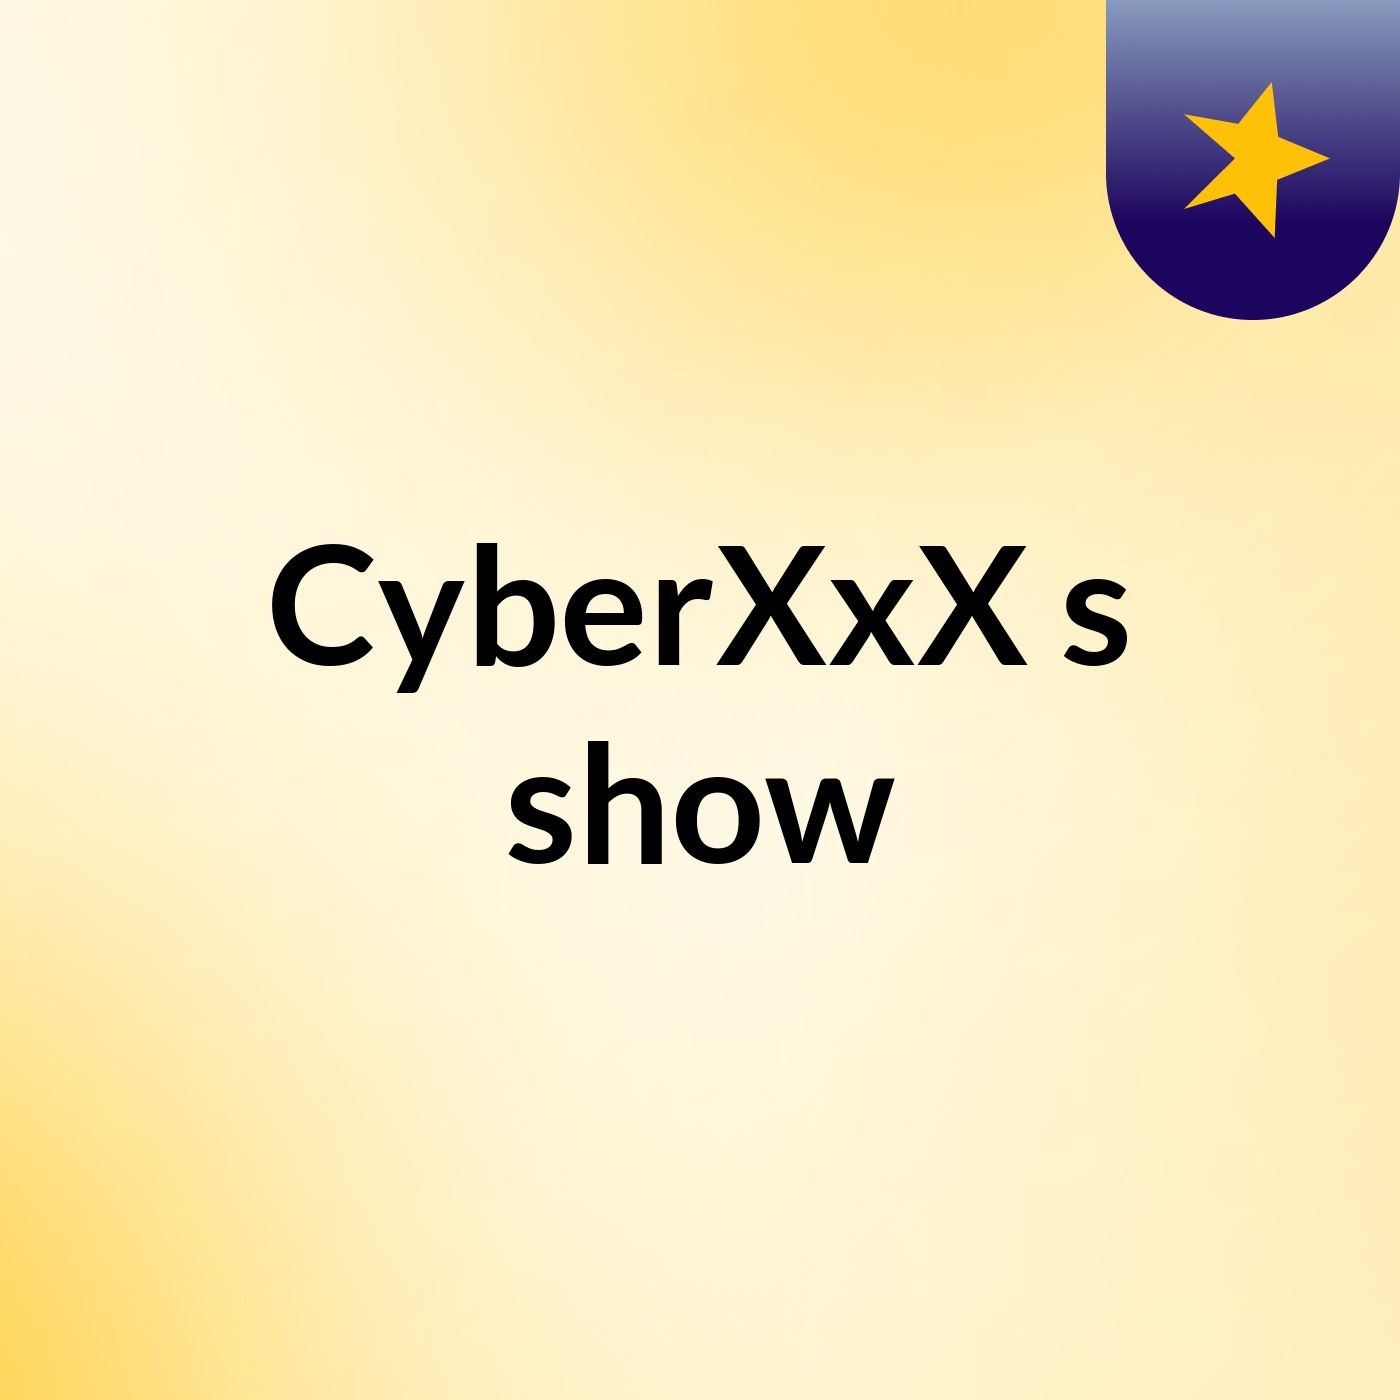 CyberXxX's show